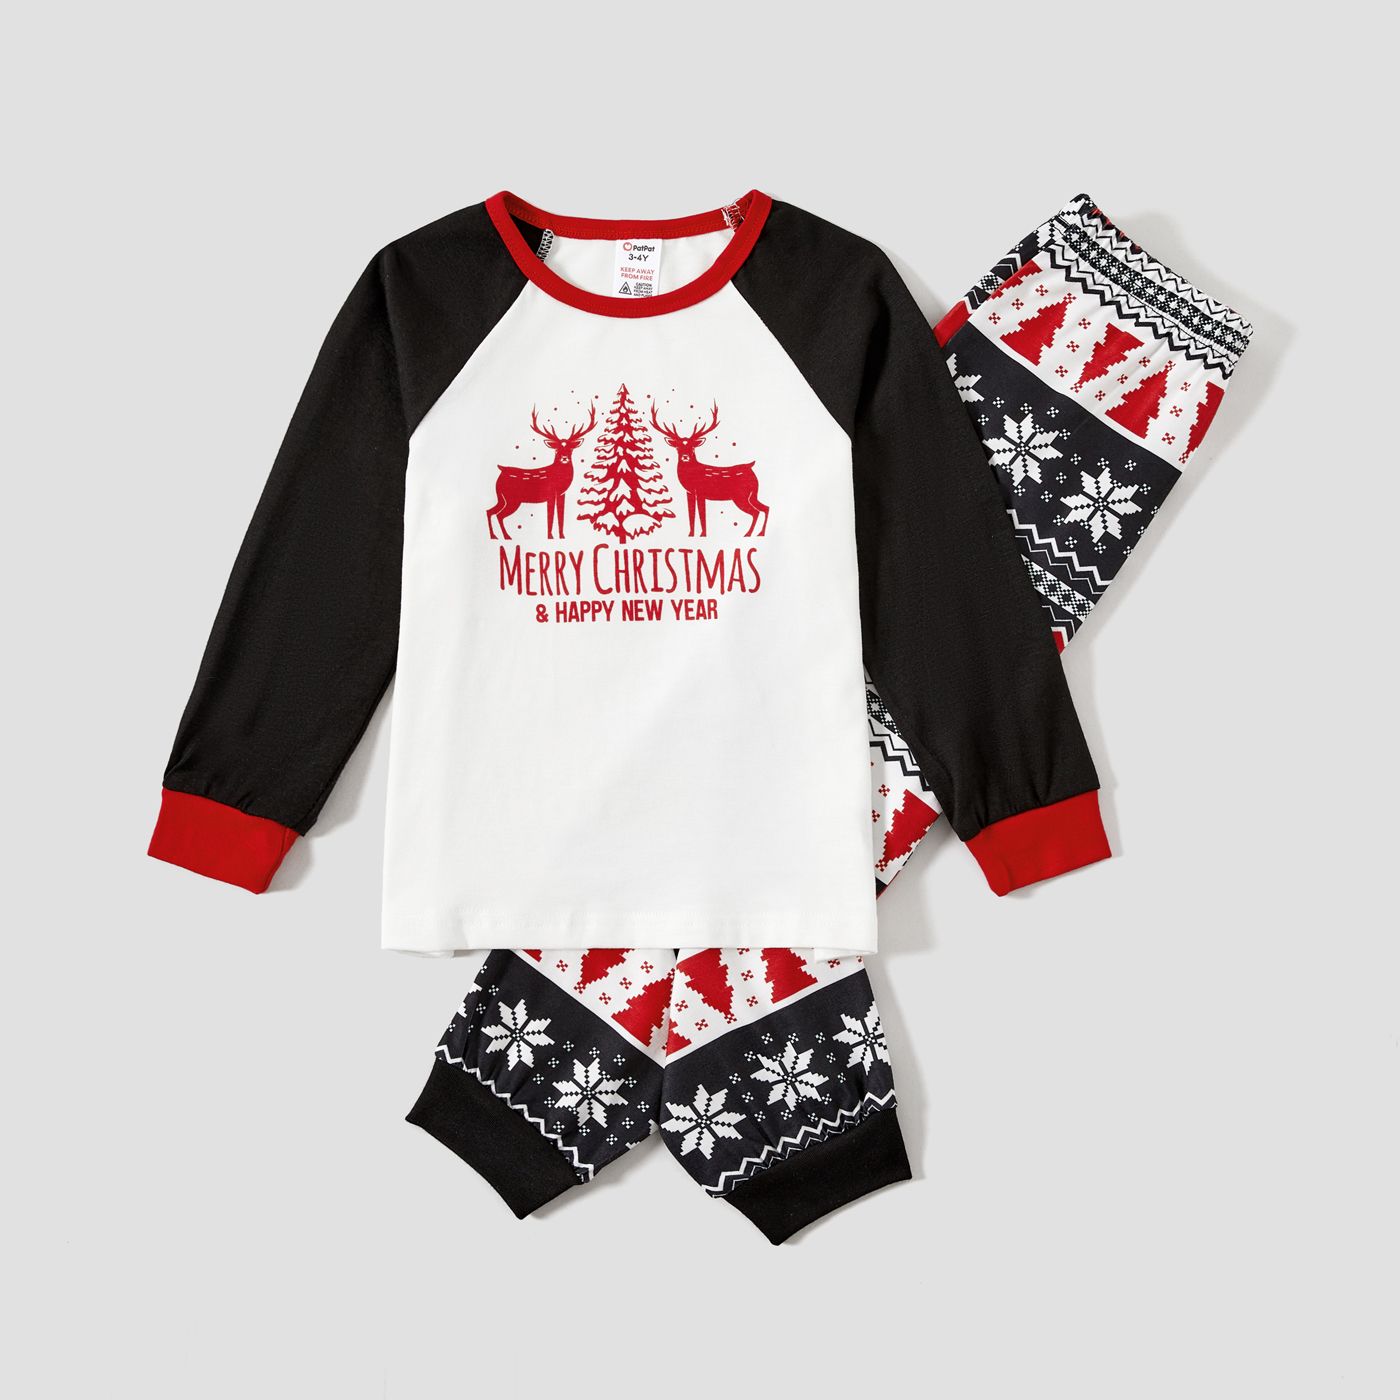 

Christmas Letter & Bear Print Raglan-sleeve top and Pants Family Matching Pajamas Sets (Flame Resistant)